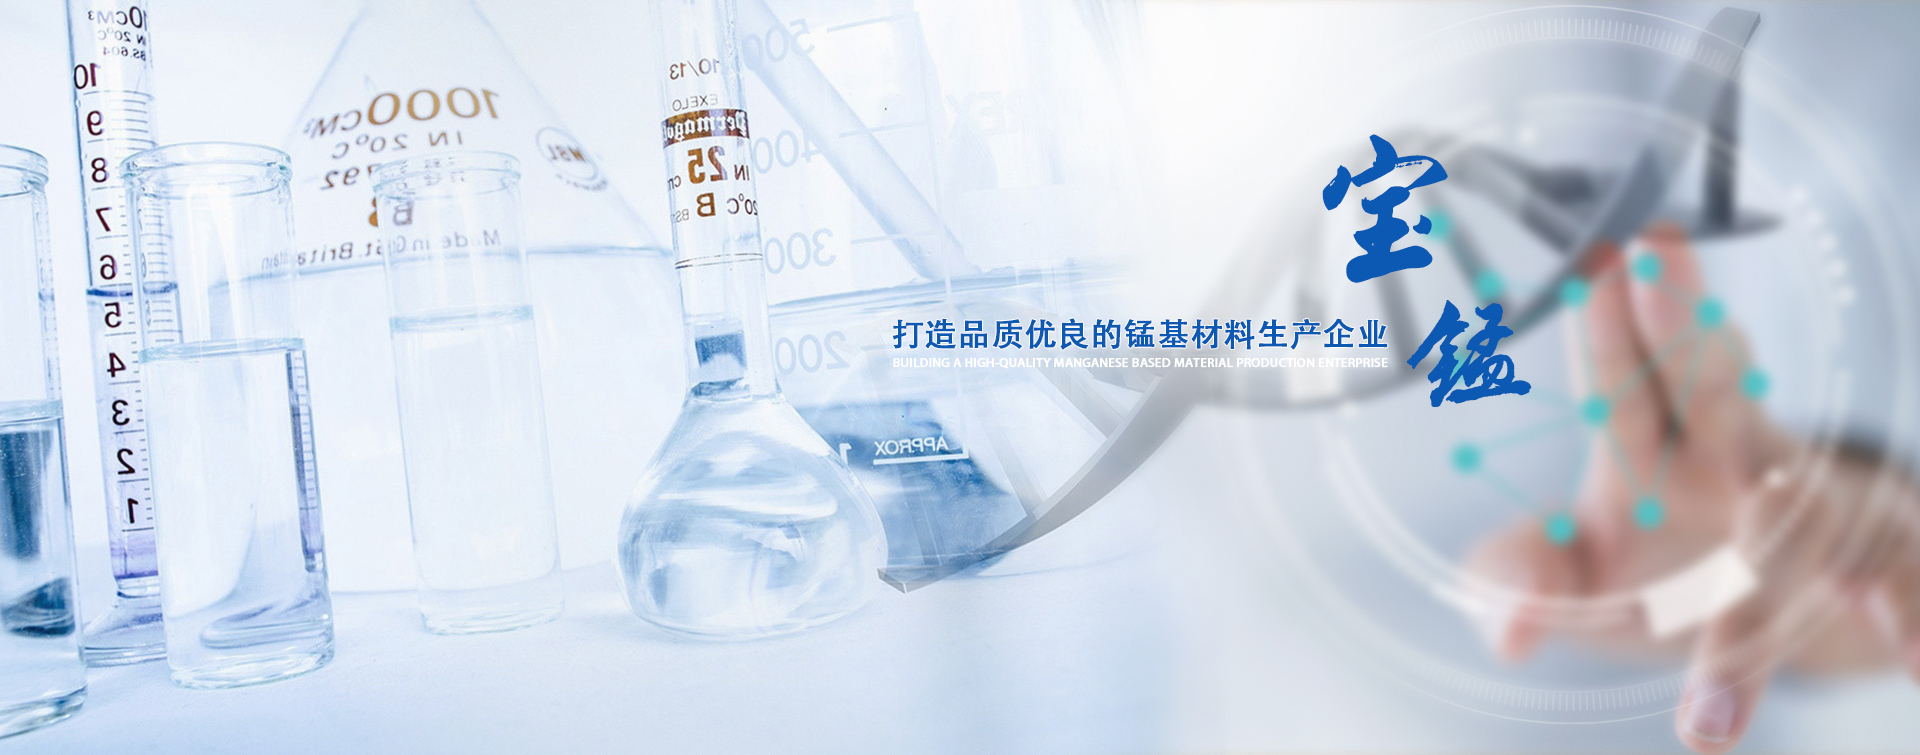 专业生产一水硫酸锰产品